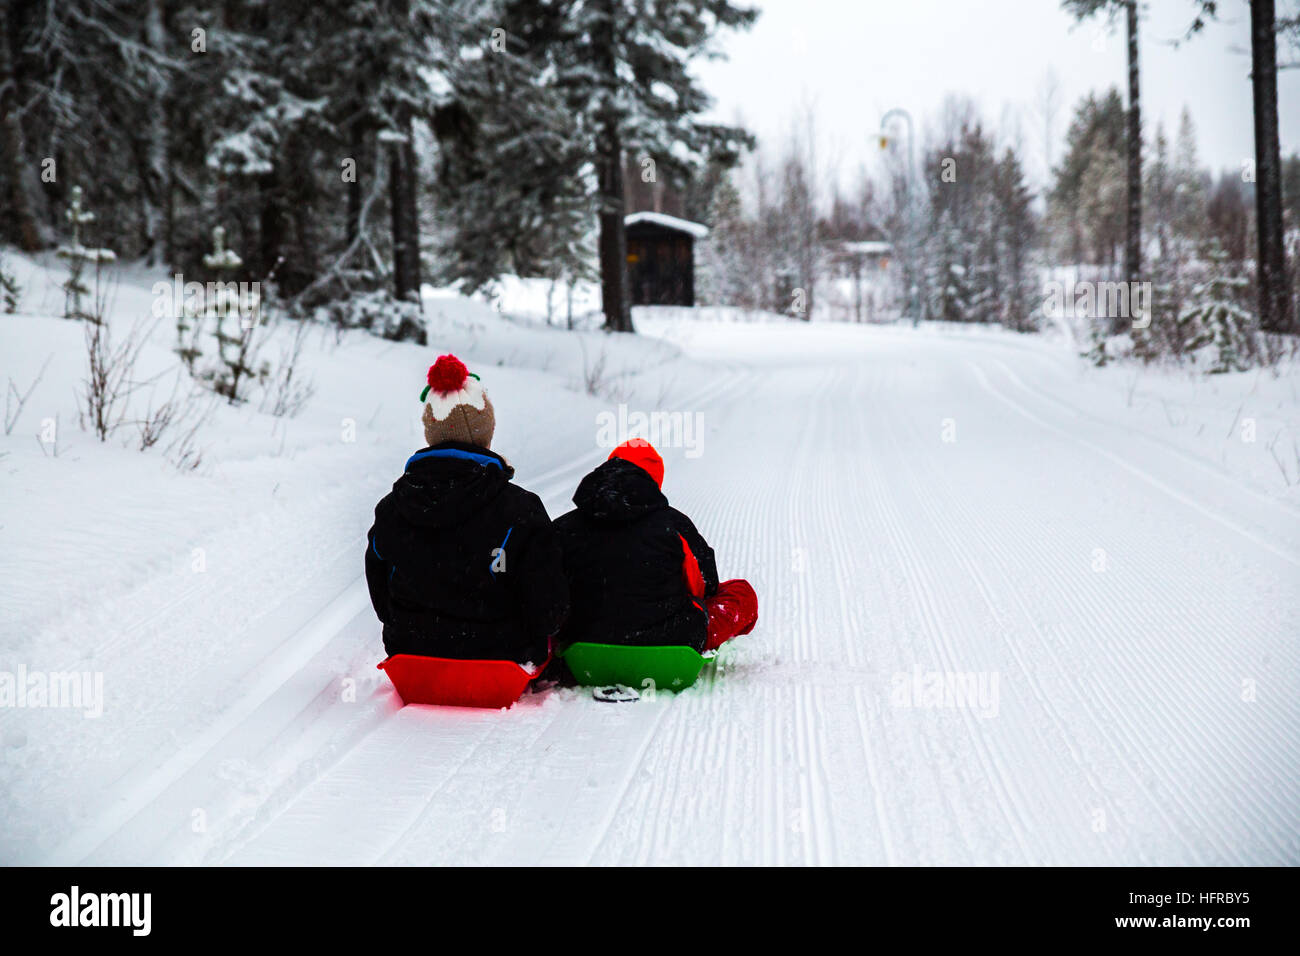 Stetige Schneefall über Nacht und-5 Grad Celsius Temperaturen dazu beigetragen, eine schöne weiße Weihnacht, heute 25. Dezember 2016, in Salla, Finnland. Stockfoto